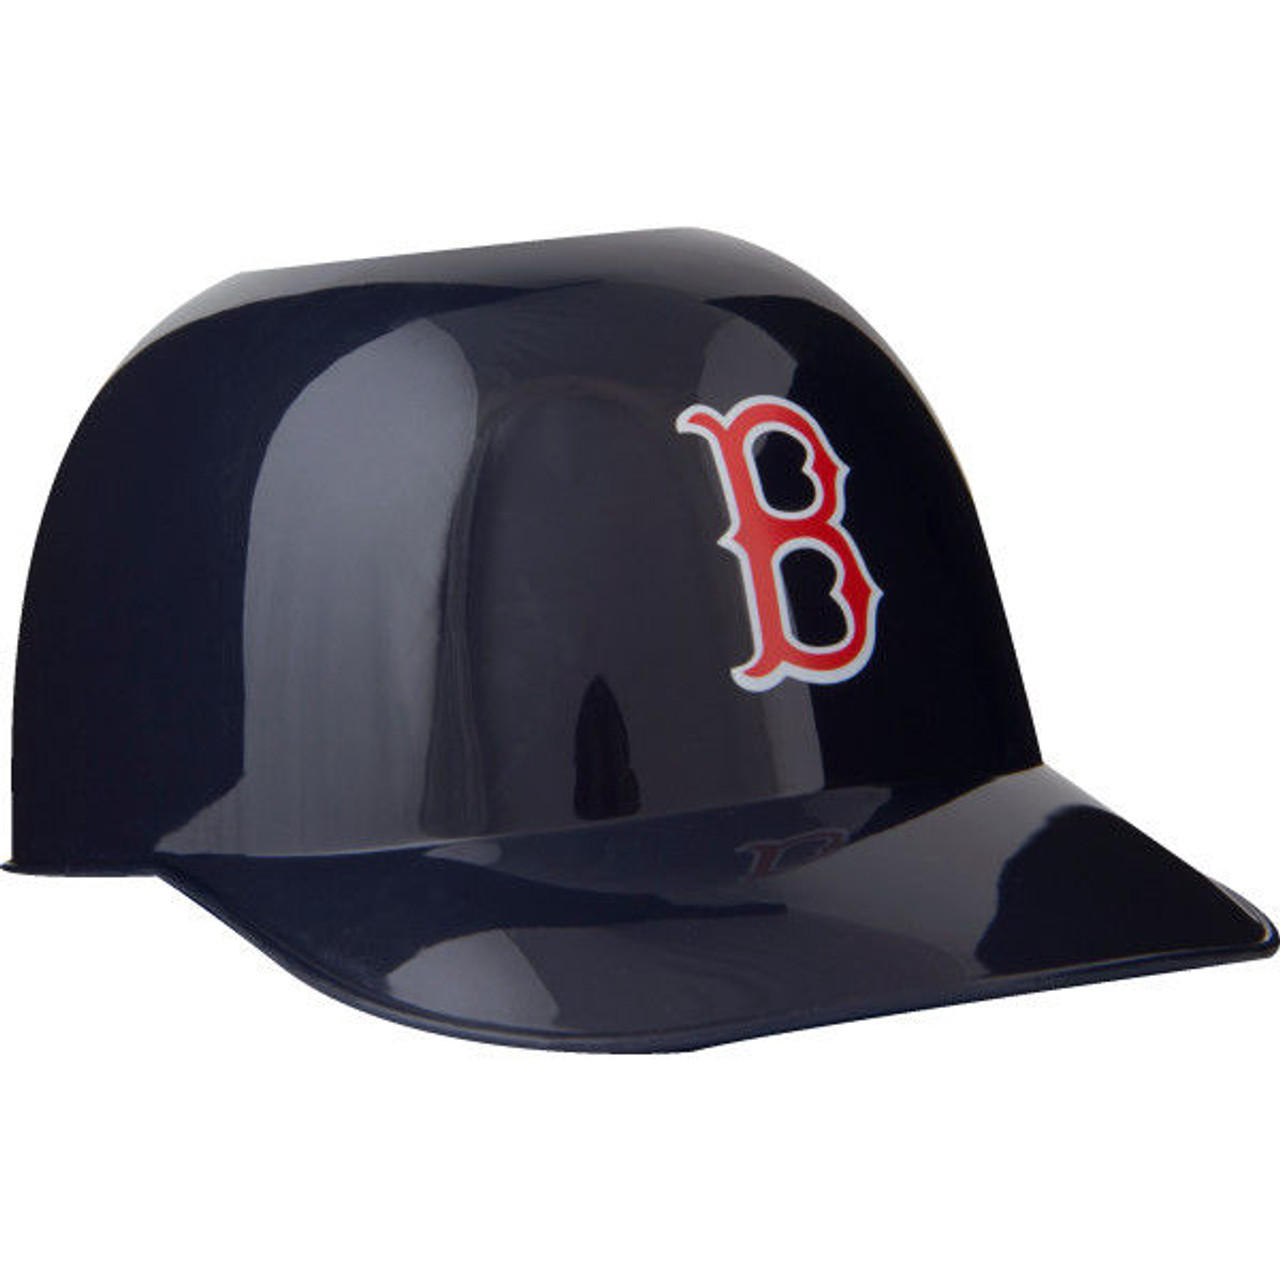 Boston Red Sox Sundae Helmet Tee Shirt 5T / White